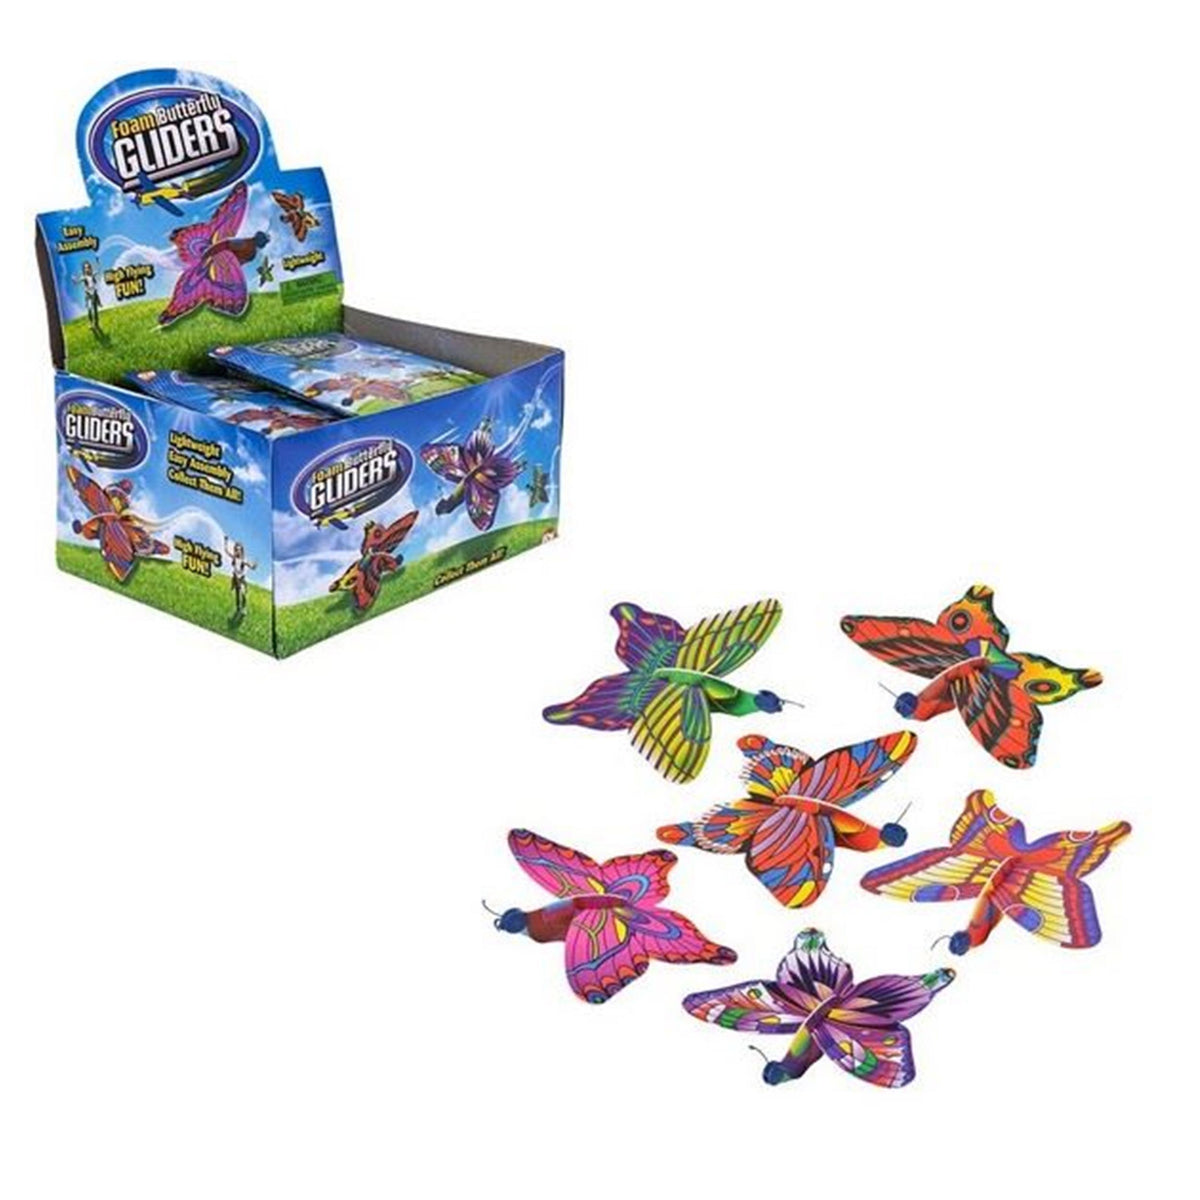 Butterfly Gliders kids Toys In Bulk